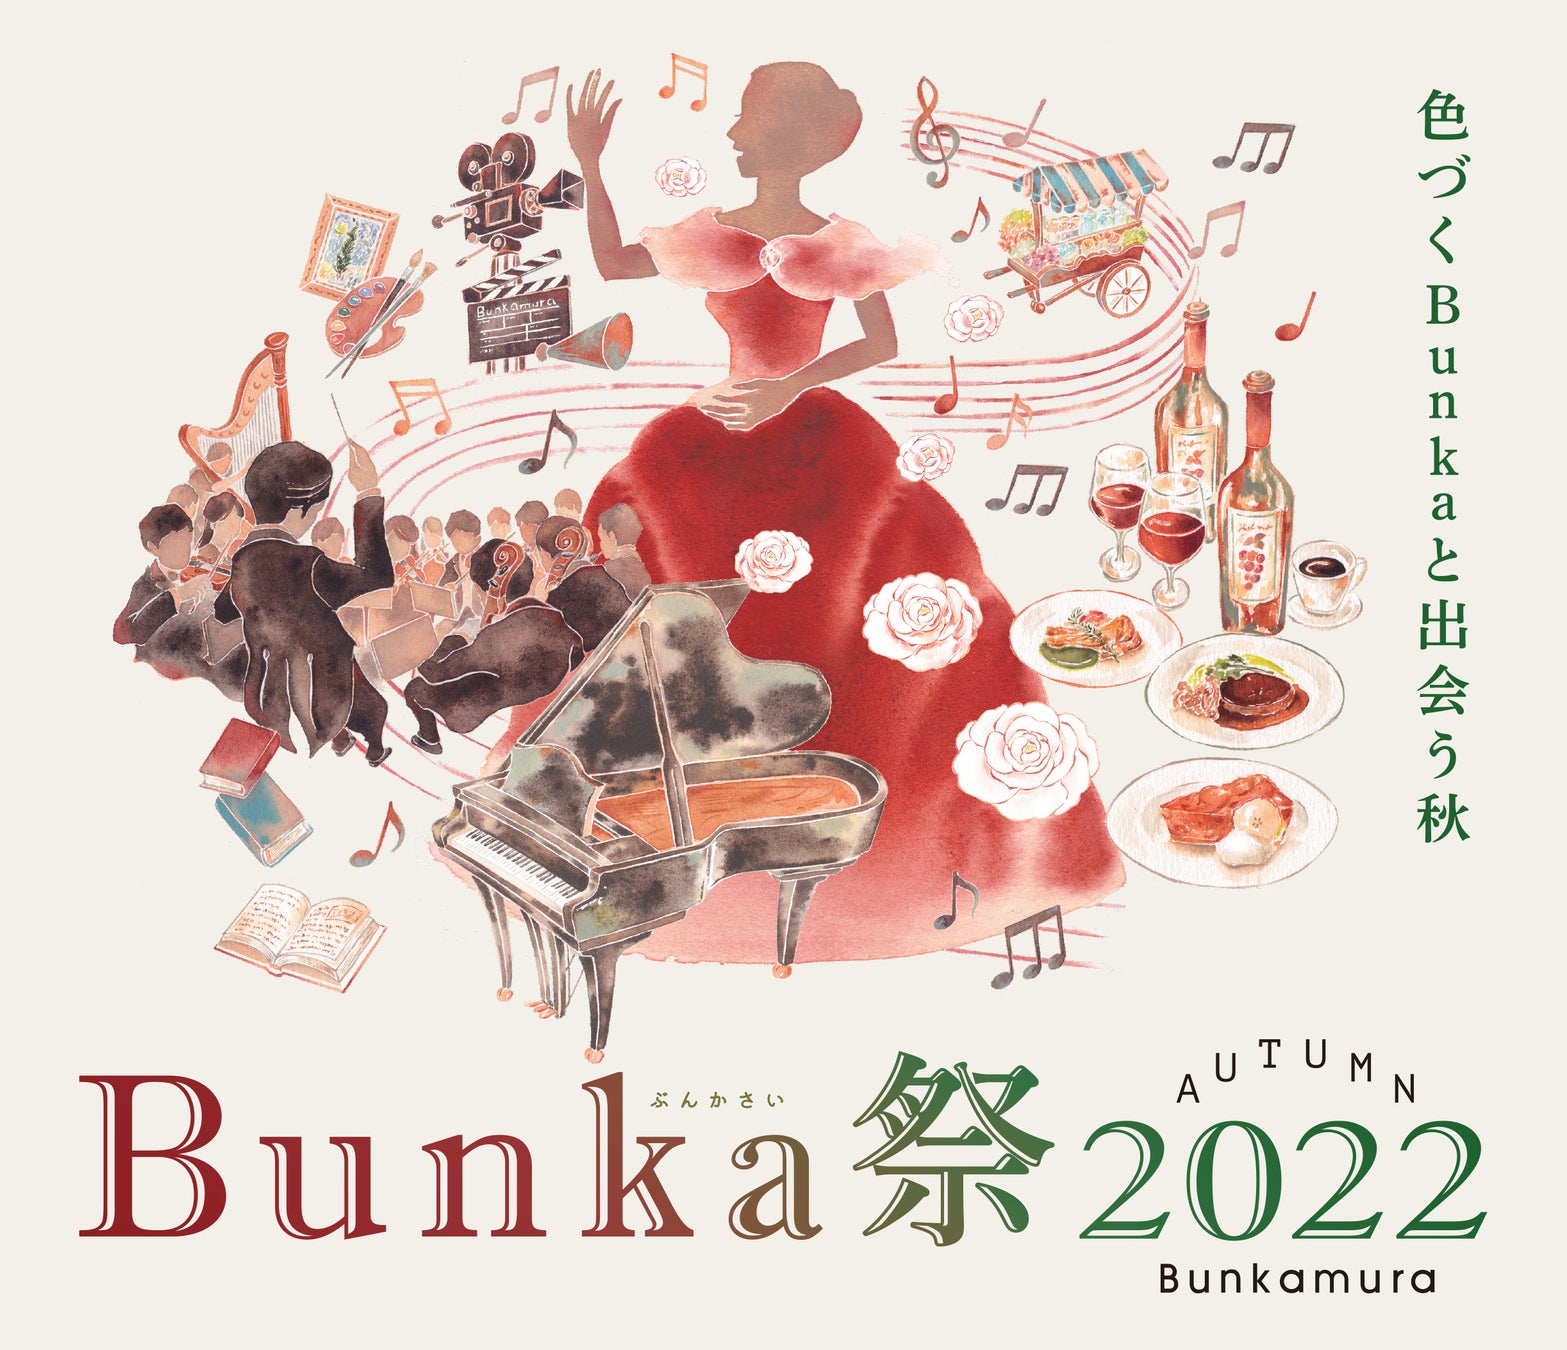 色づくBunkaと出会う秋。9月中旬より約2ヶ月間、『Bunka祭2022』を開催